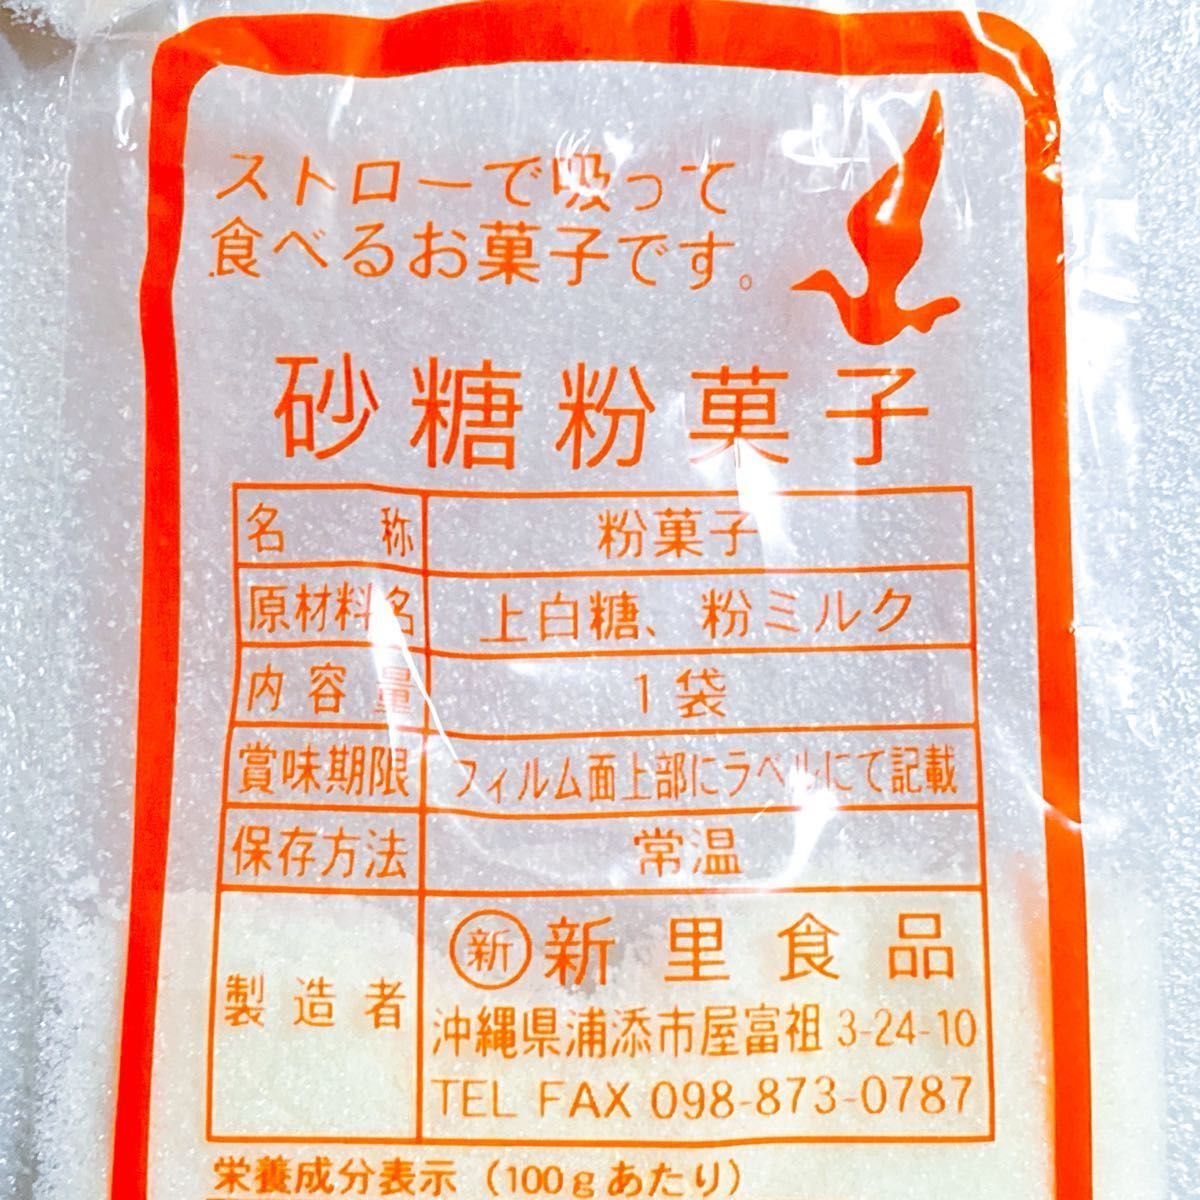 【人気商品】沖縄 砂糖粉菓子(２０袋セット) 新里食品 おやつ お茶菓子 特売品 お試し